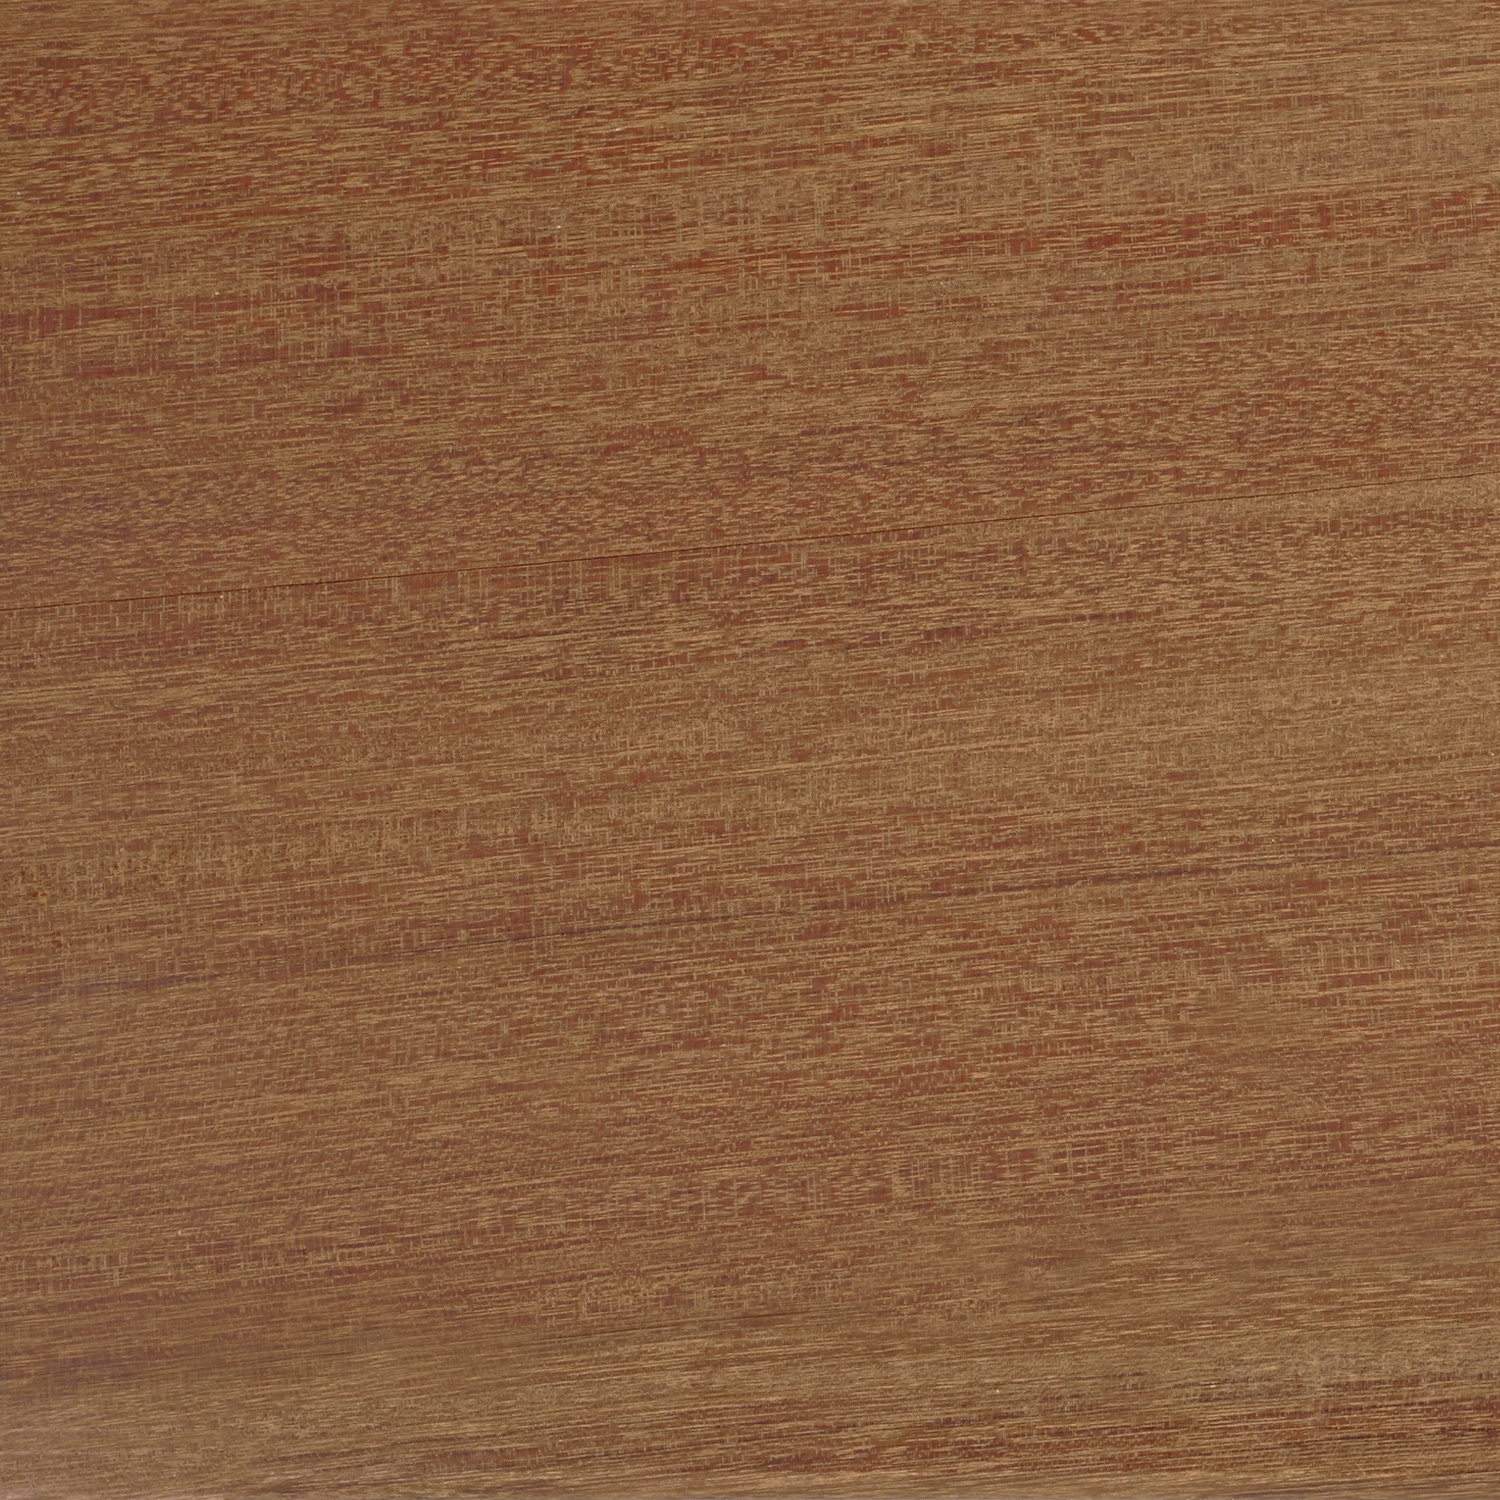  Ipé hardhout lat - hoeklat - afwerklijst - 45x45 mm - geschaafd tropisch hardhout - AD (aangedroogd)